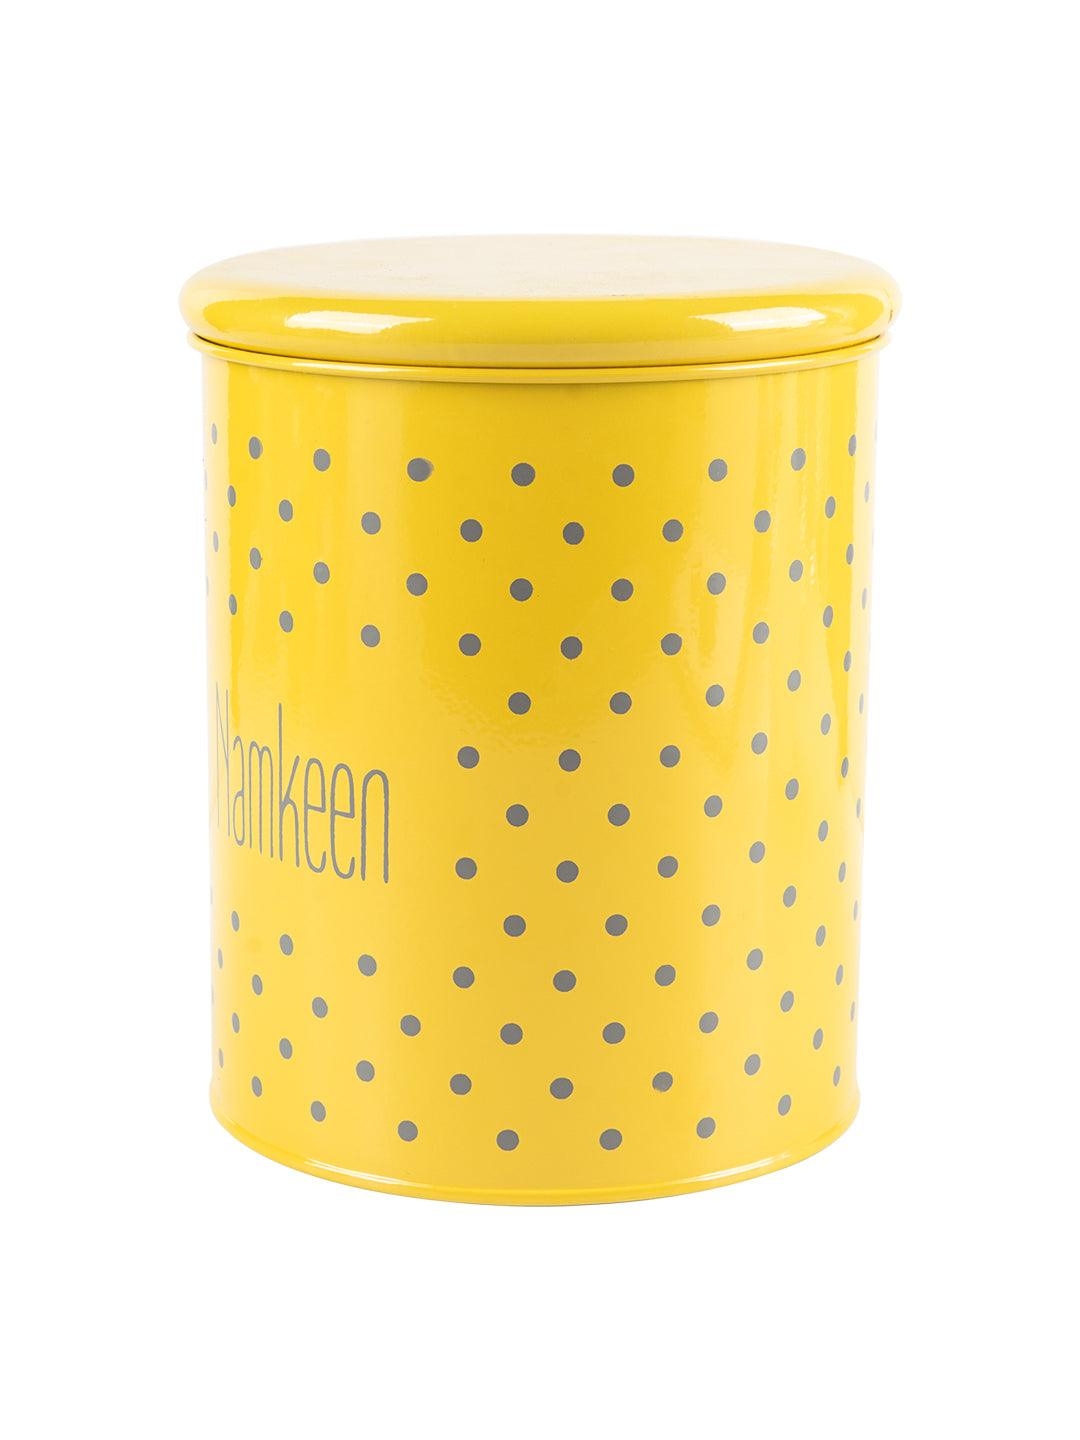 Market 99 | Namkeen Jar With Lid - (Yellow, 1700mL) 3